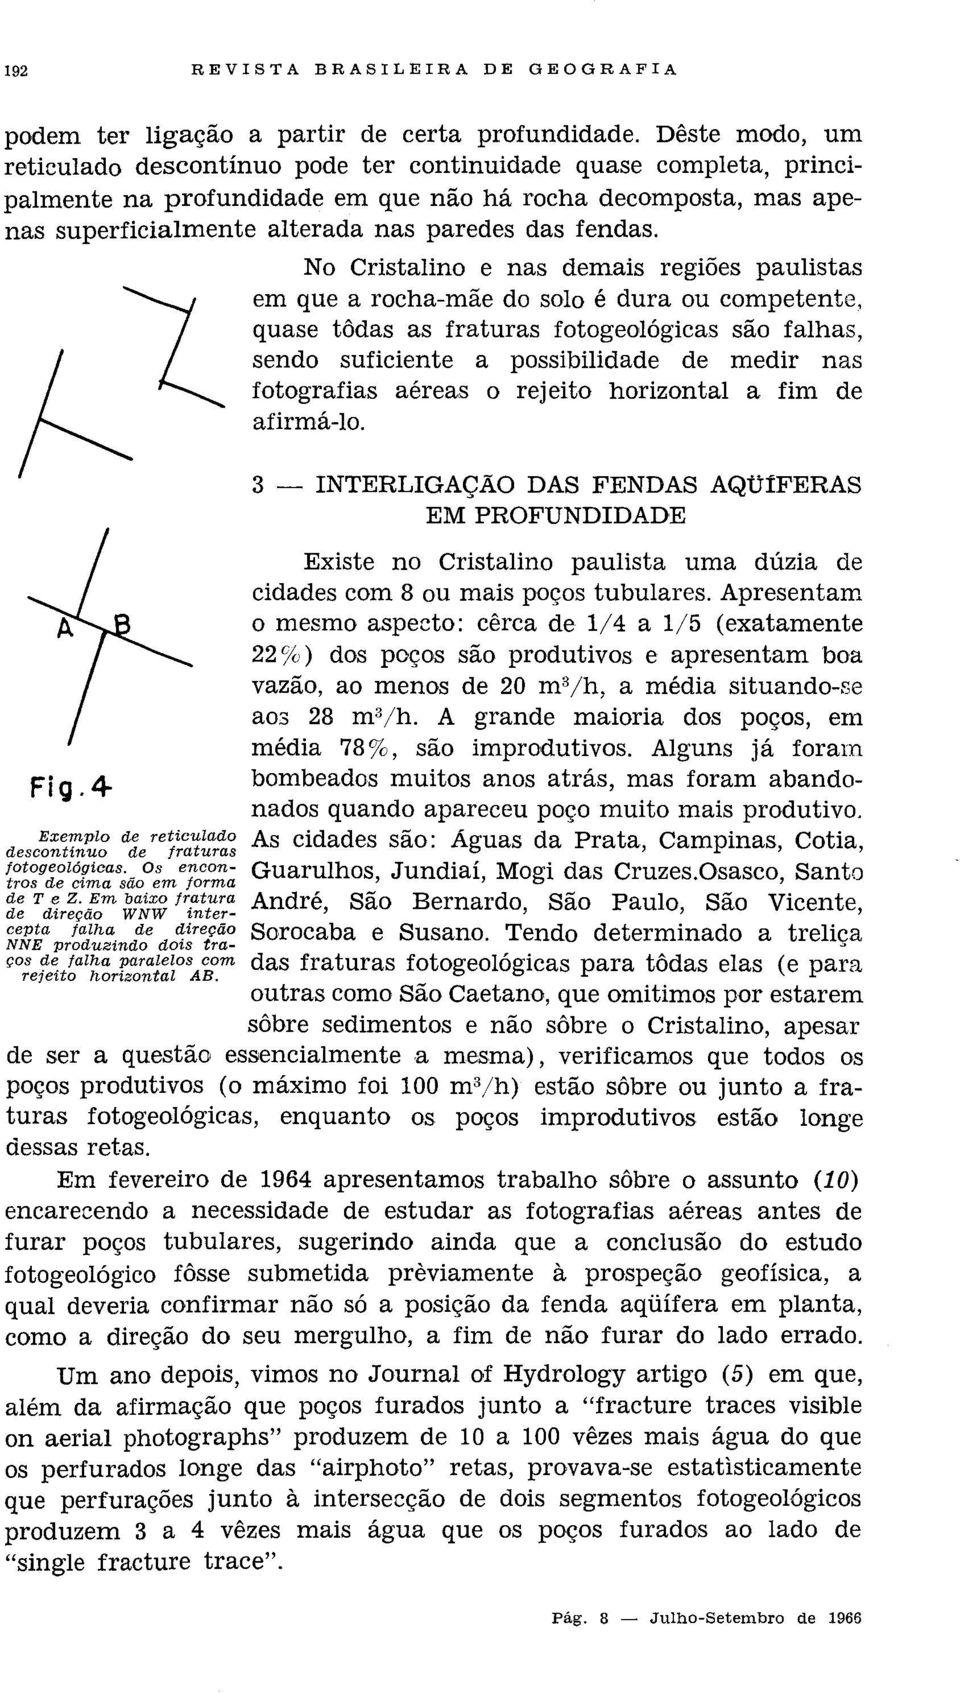 Fig.4 Exemplo de reticulado descontínuo de fraturas jotogeológicas. Os encontros de cima são em forma de T e Z.